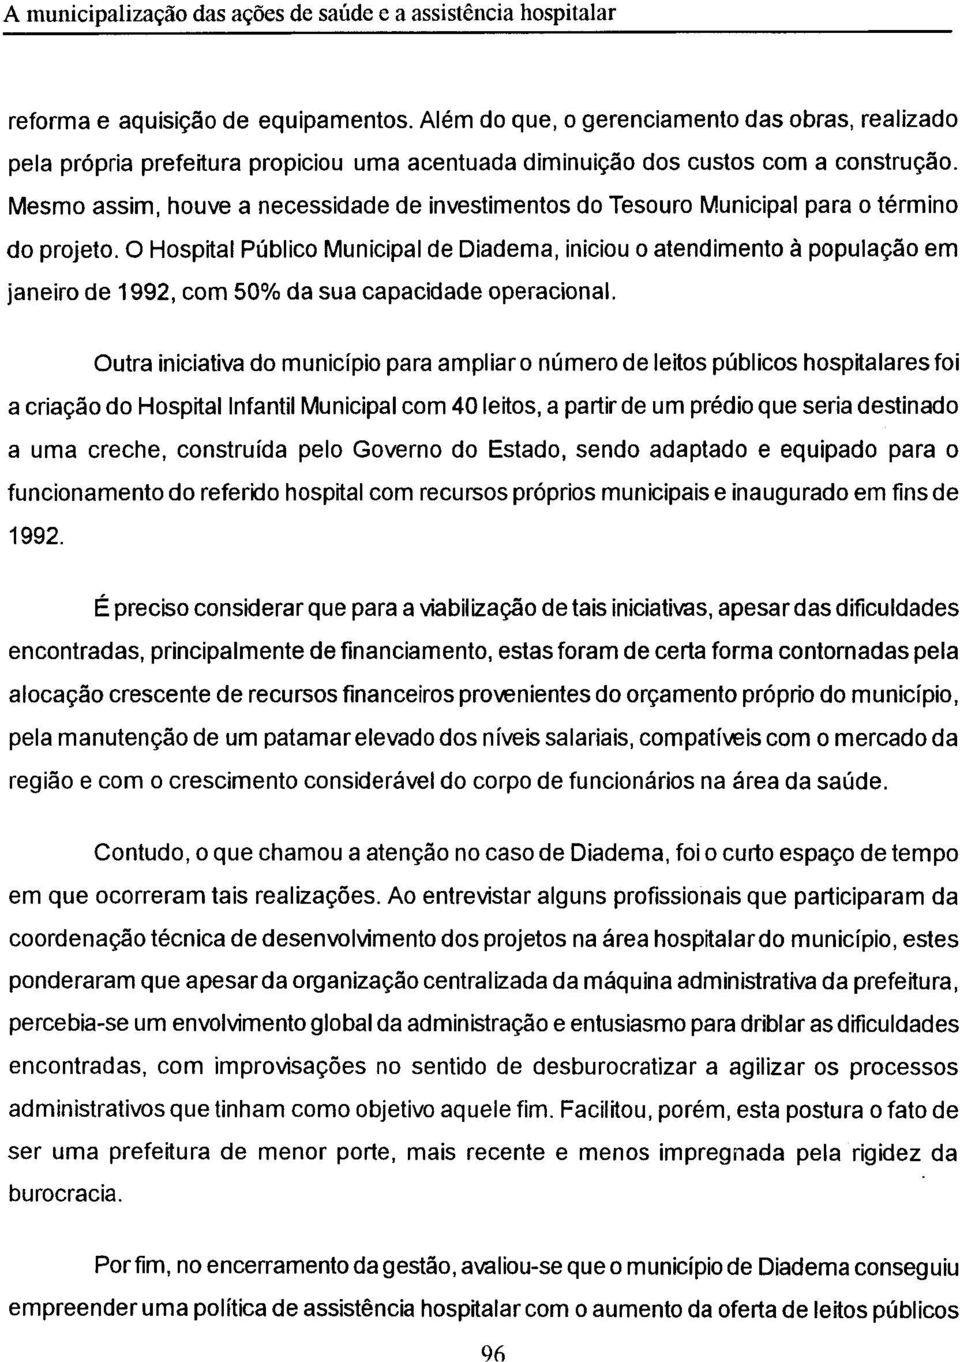 O Hospital Público Municipal de Diadema, iniciou o atendimento à população em janeiro de 1992, com 50% da sua capacidade operacional.